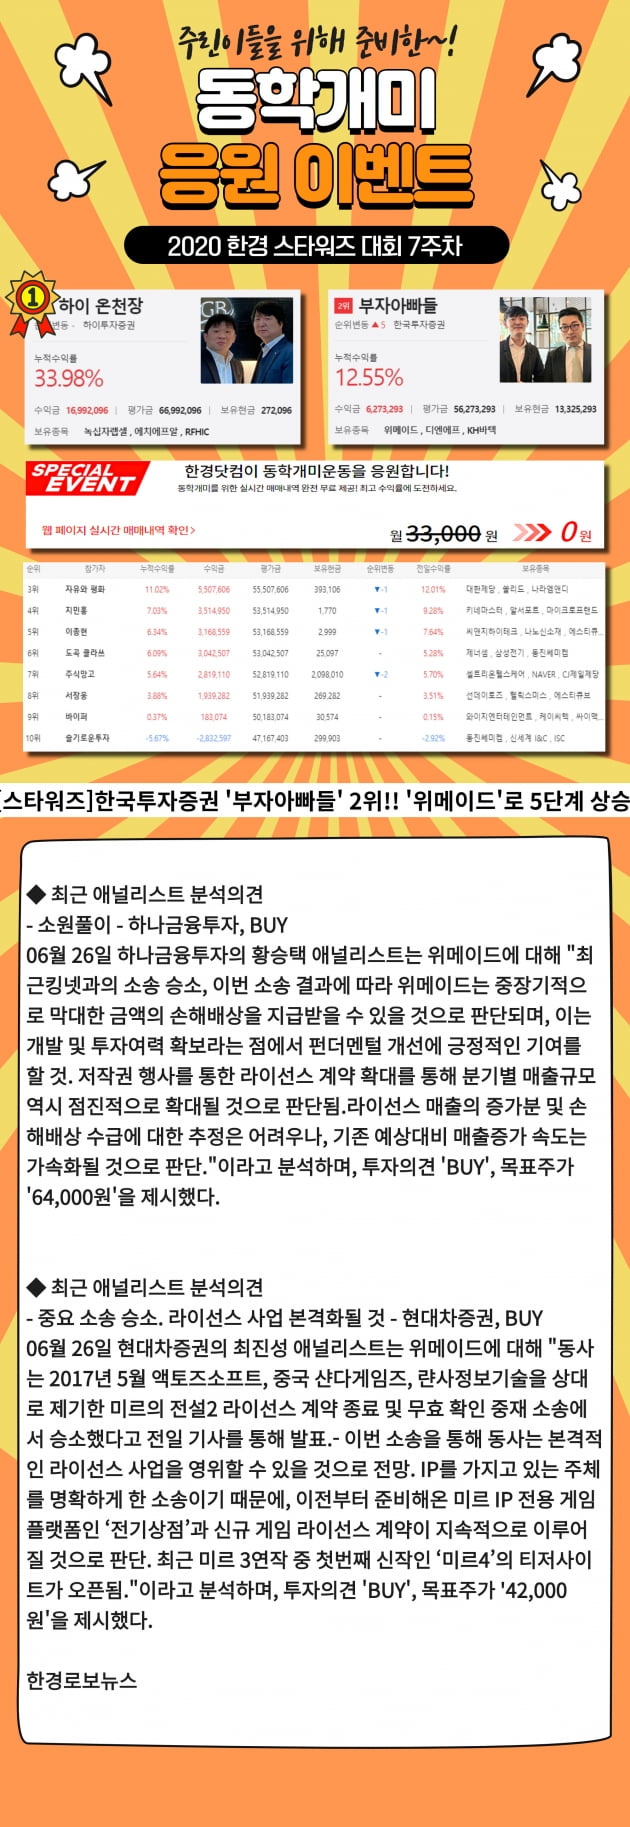 [2020스타워즈] 역시 한투!! '부자아빠들' 하루만에 5계단 상승 2위 기록!!